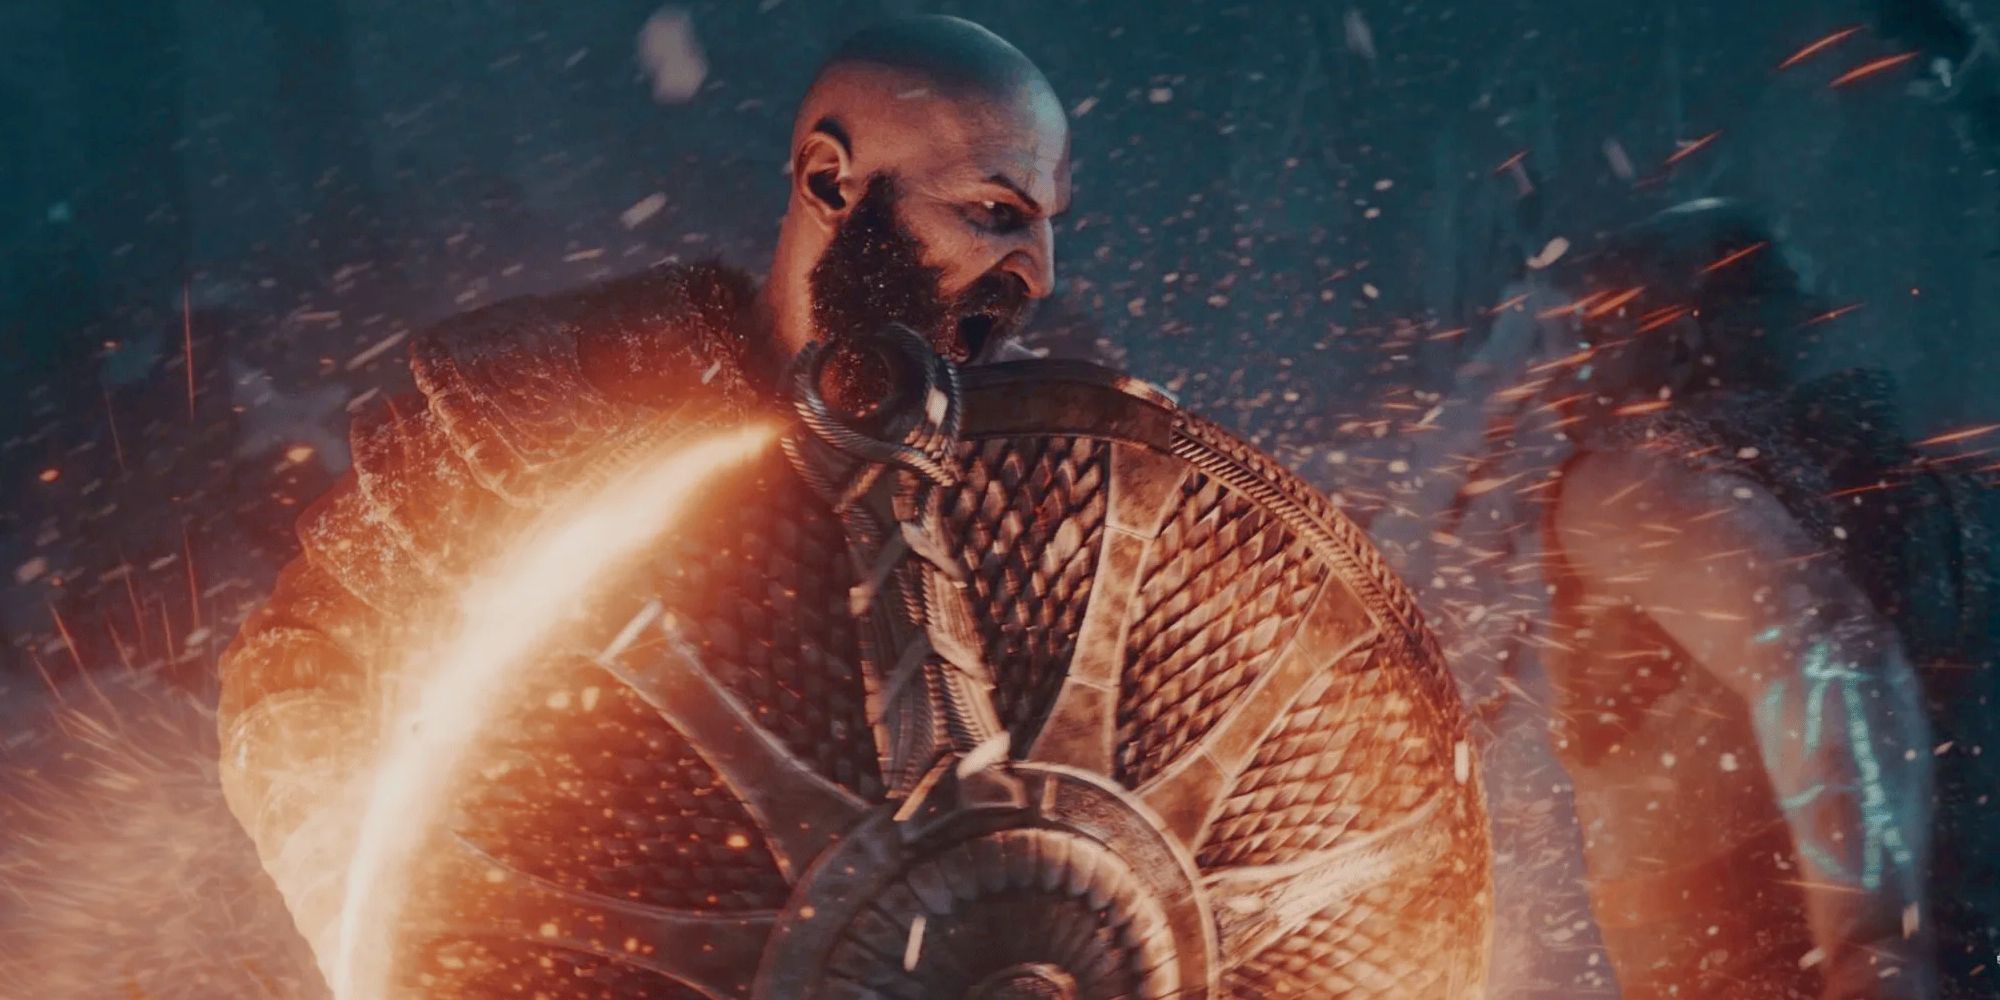 Een bebaarde Kratos met open mond wordt gezien met een gloeiend schild dat vonken uit zijn zij schiet als een vijand hem nadert.